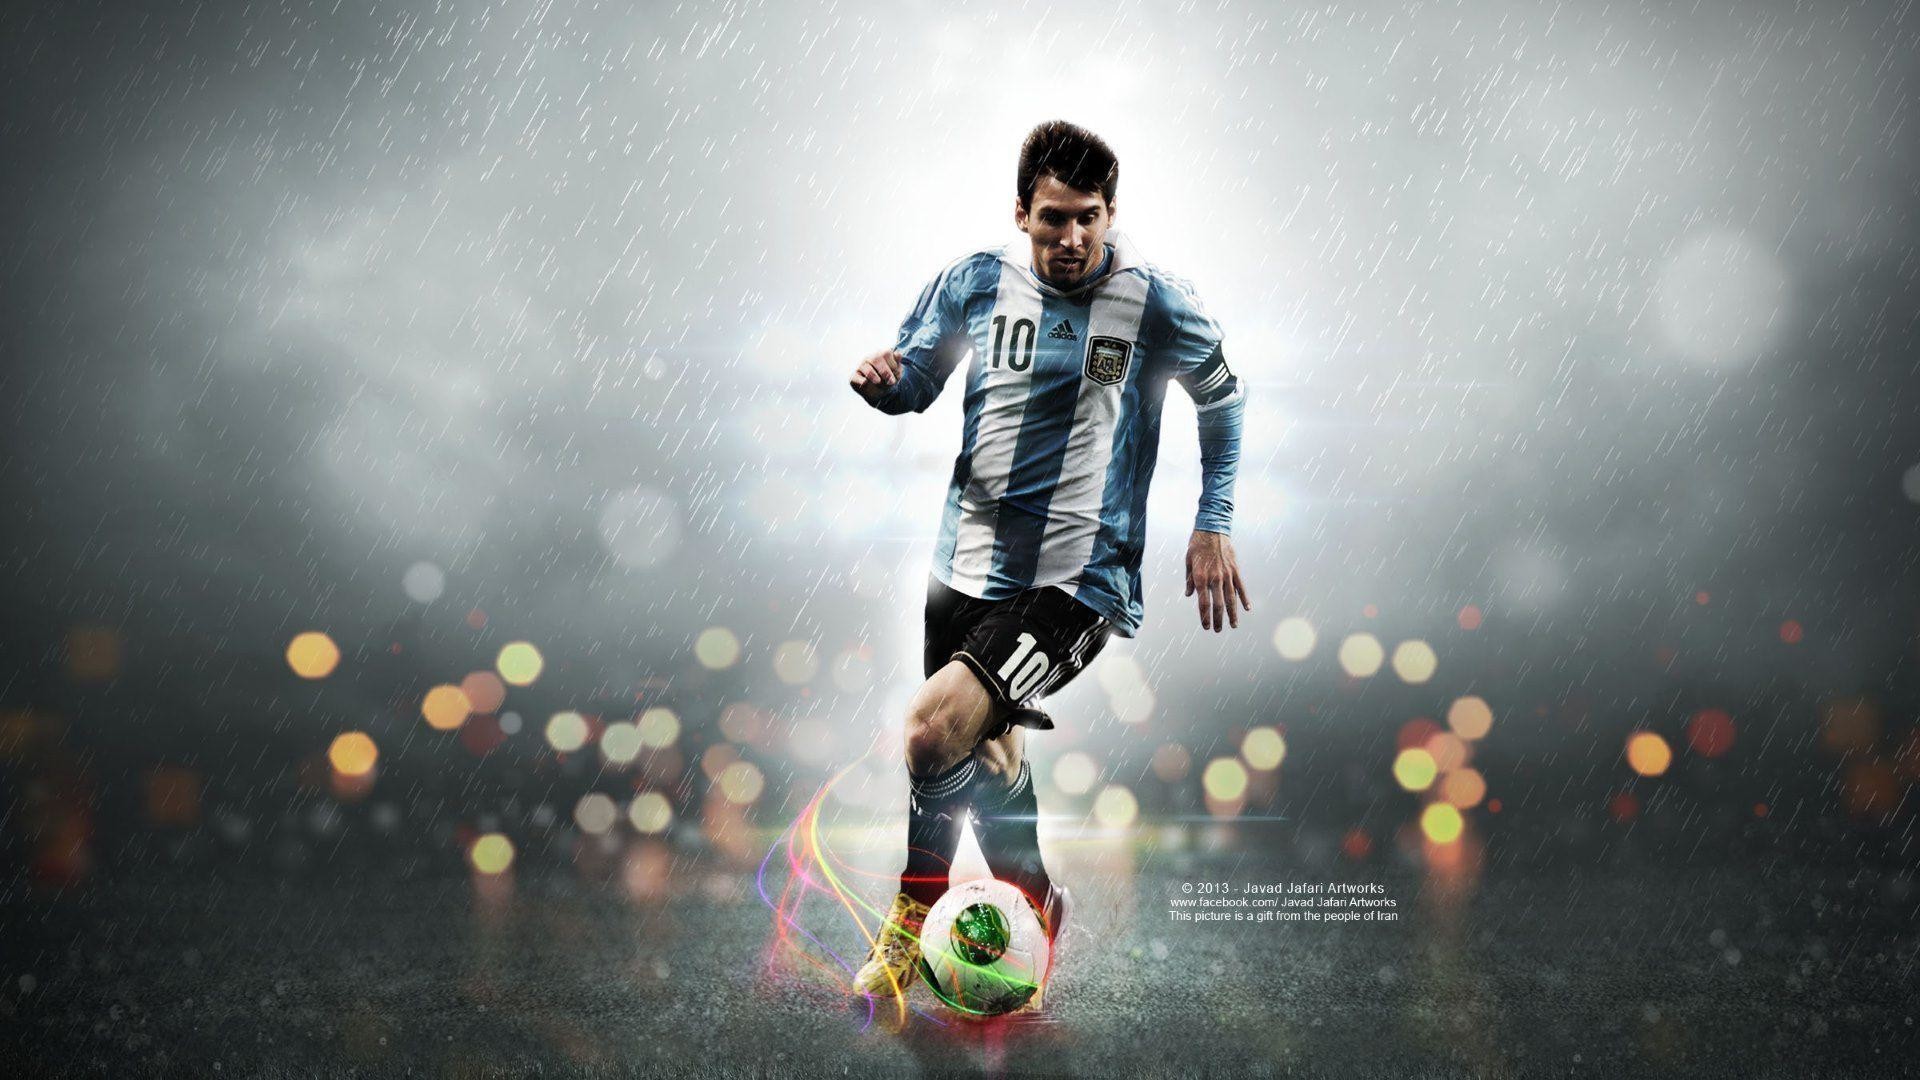 Lionel Messi, hình nền HD: Với những đường cong hoàn hảo và kỹ năng điêu luyện trên sân cỏ, Messi chính là tấm gương của sự nghiệp bóng đá. Cảm nhận động lực và sự tuyệt vời khi chia sẻ bức ảnh nền Lionel Messi siêu đẹp trên điện thoại của mình.